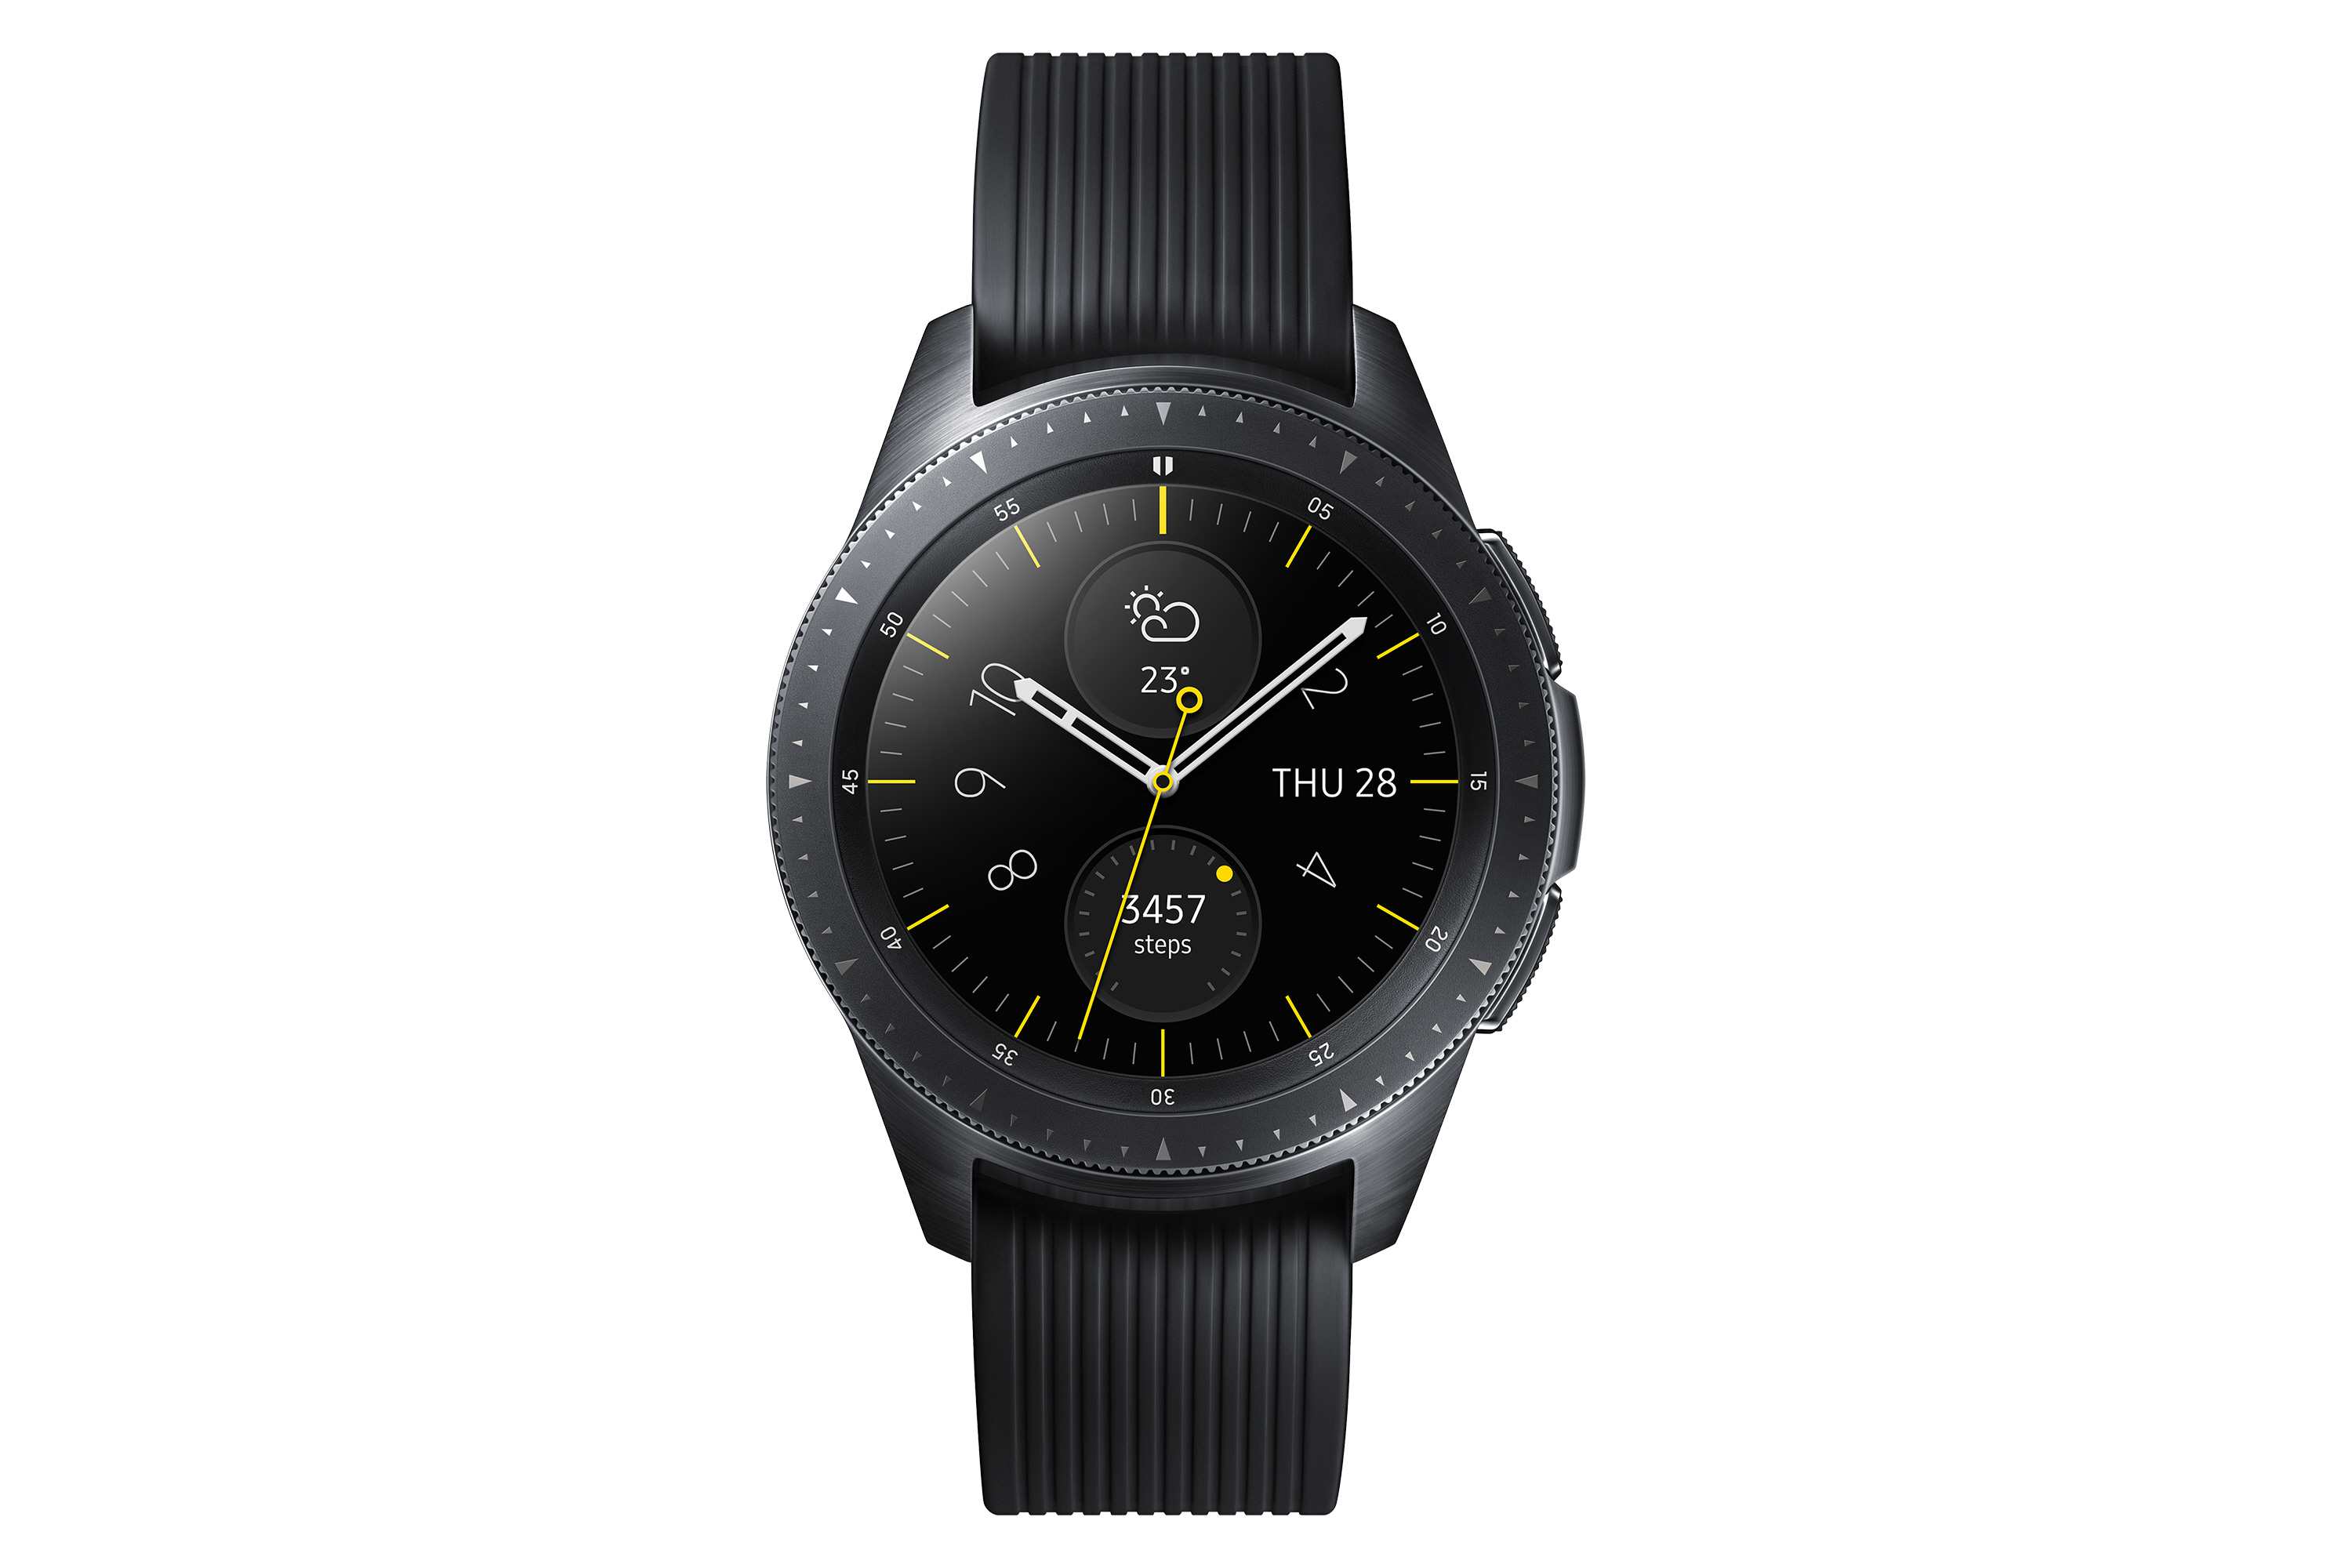 Zwart Samsung Galaxy horloge in 42 mm formaat.